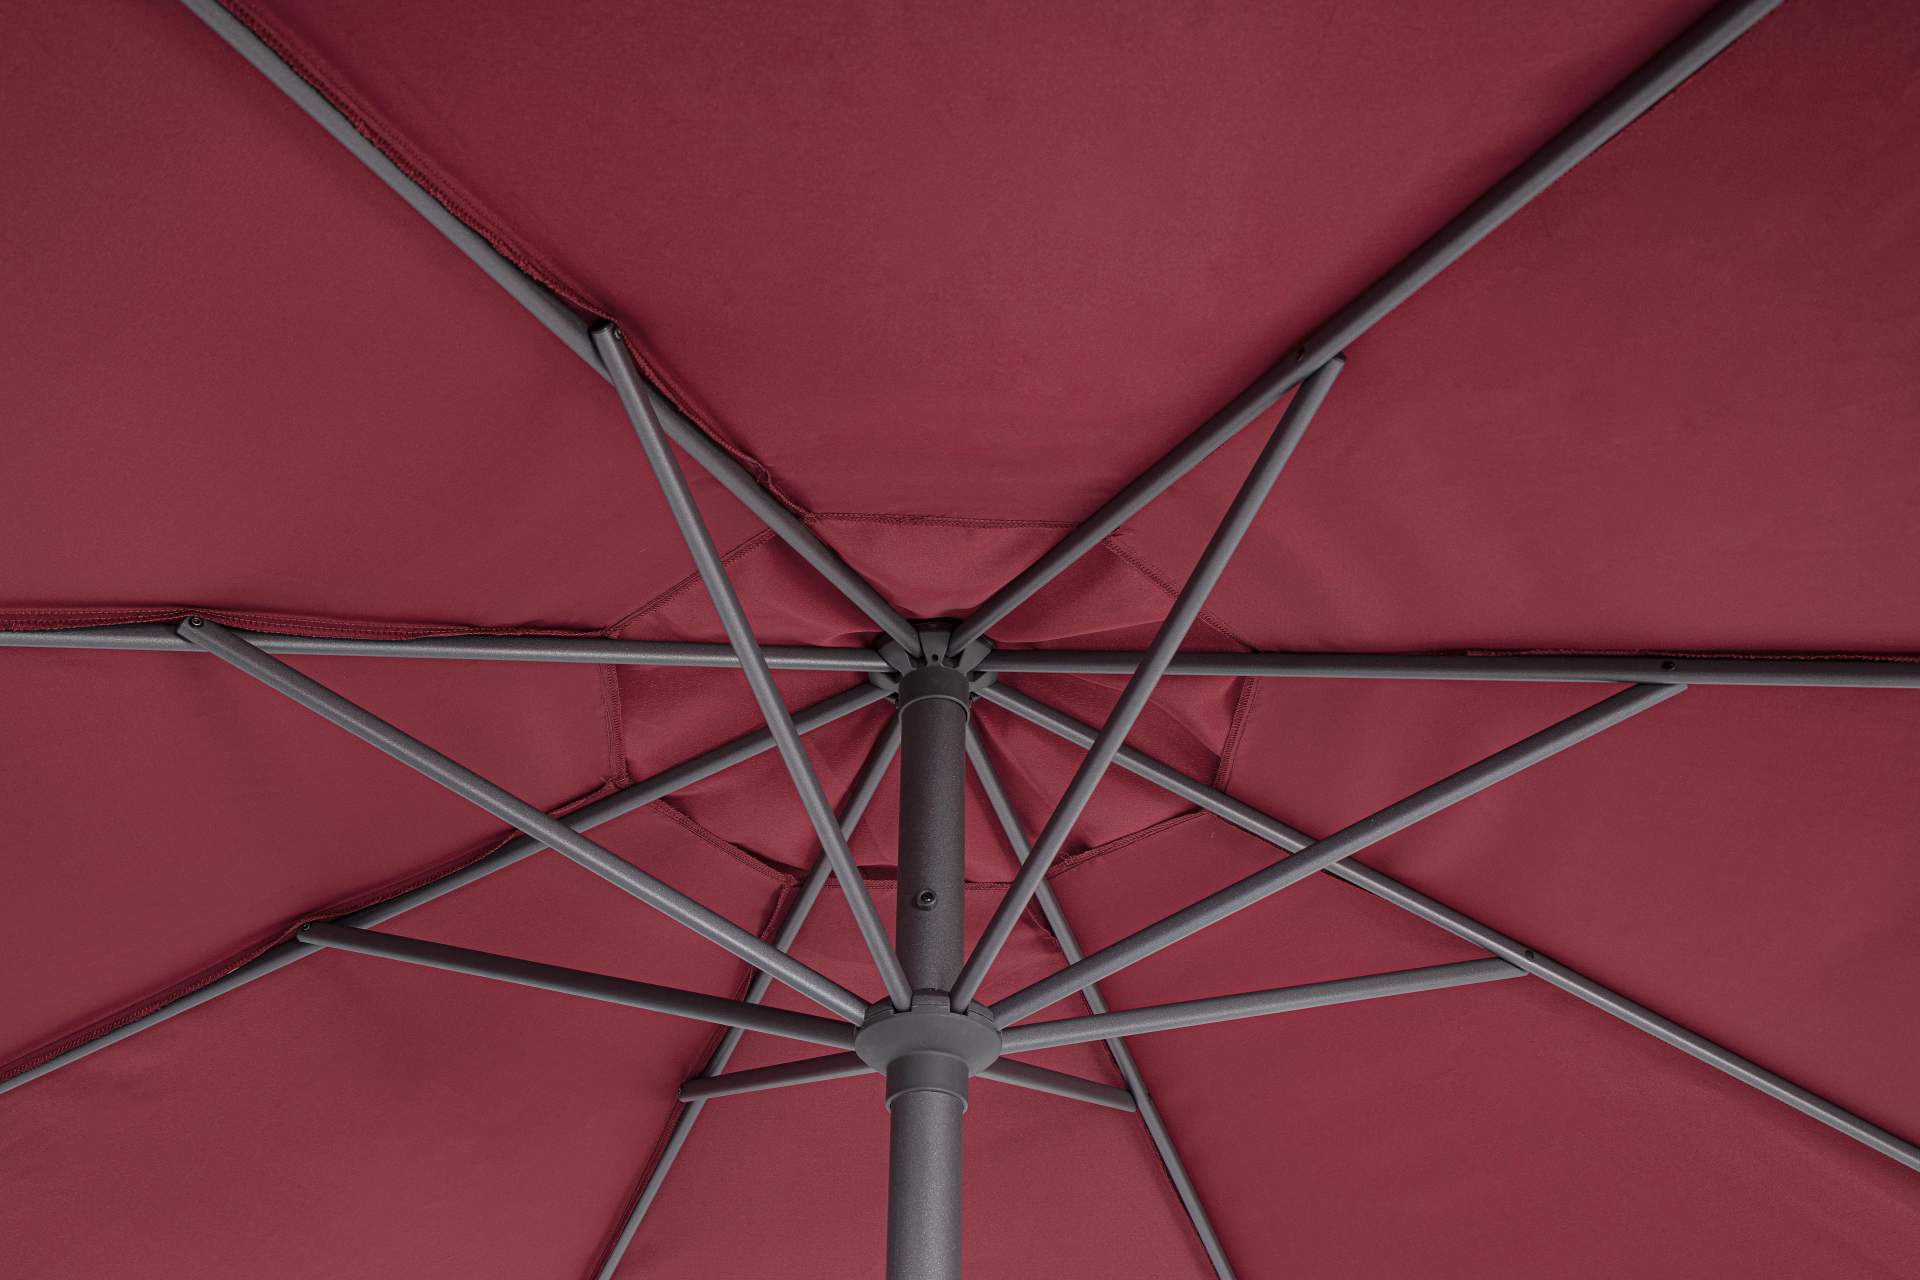 Der Sonnenschirm Rio überzeugt mit seinem klassischen Design. Gefertigt wurde er aus einer Polyester Plane, welche einen roten Farbton besitzt. Das Gestell ist aus Aluminium und hat eine Anthrazit Farbe. Der Sonnenschirm verfügt über einen Durchmesser von